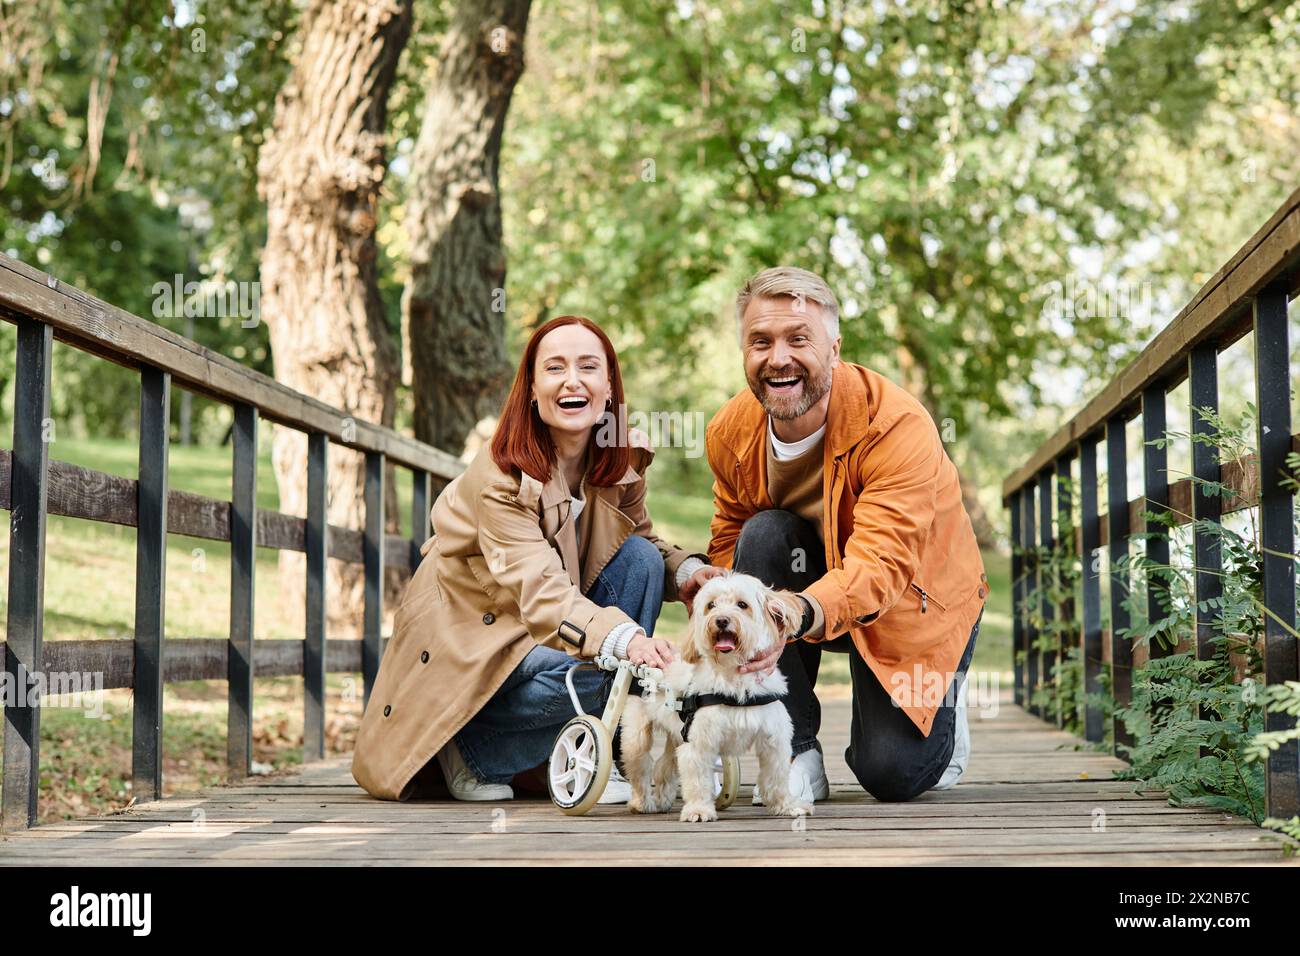 Ein Mann und eine Frau knieten mit zwei Hunden in einem Park. Stockfoto